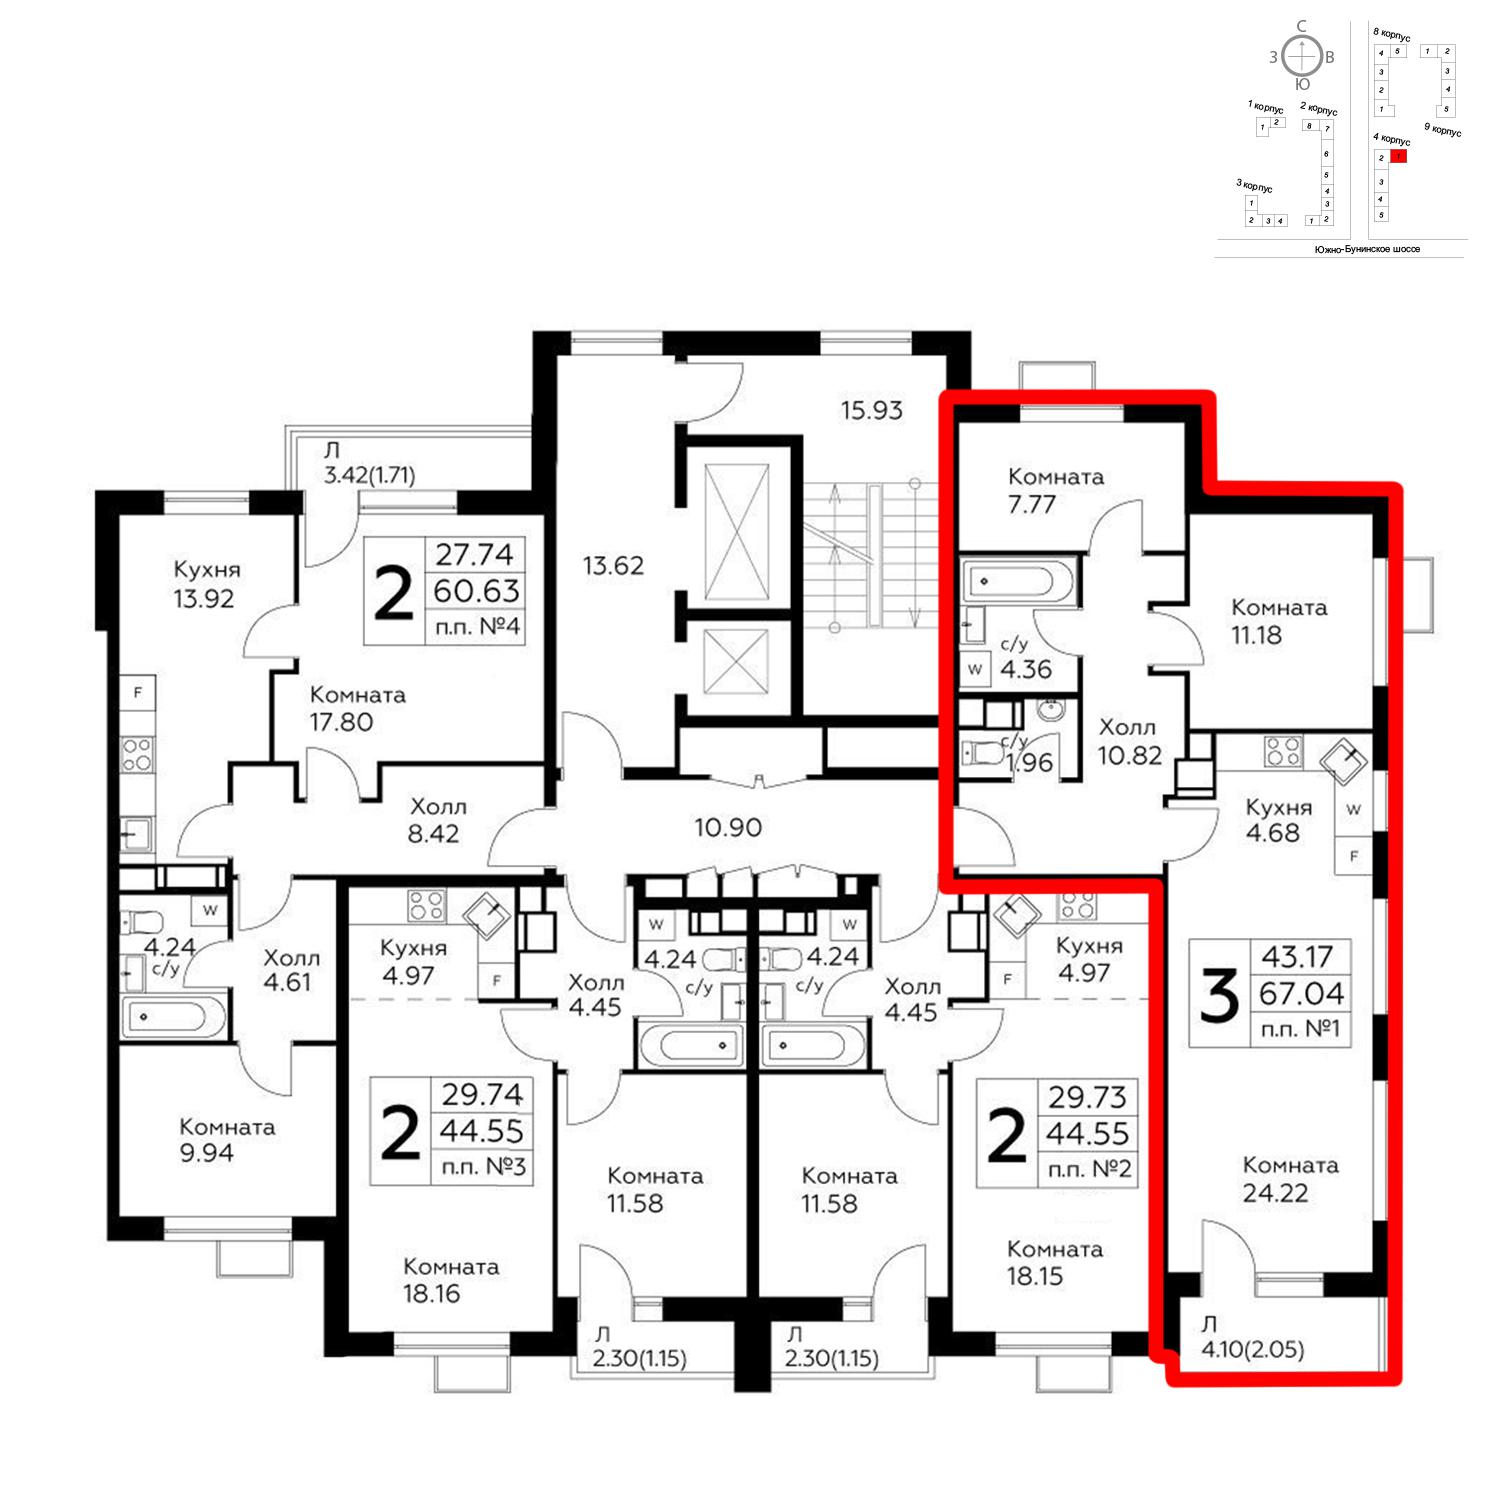 Продаётся 3-комнатная квартира в новостройке 67.0 кв.м. этаж 6/14 за 14 064 740 руб 